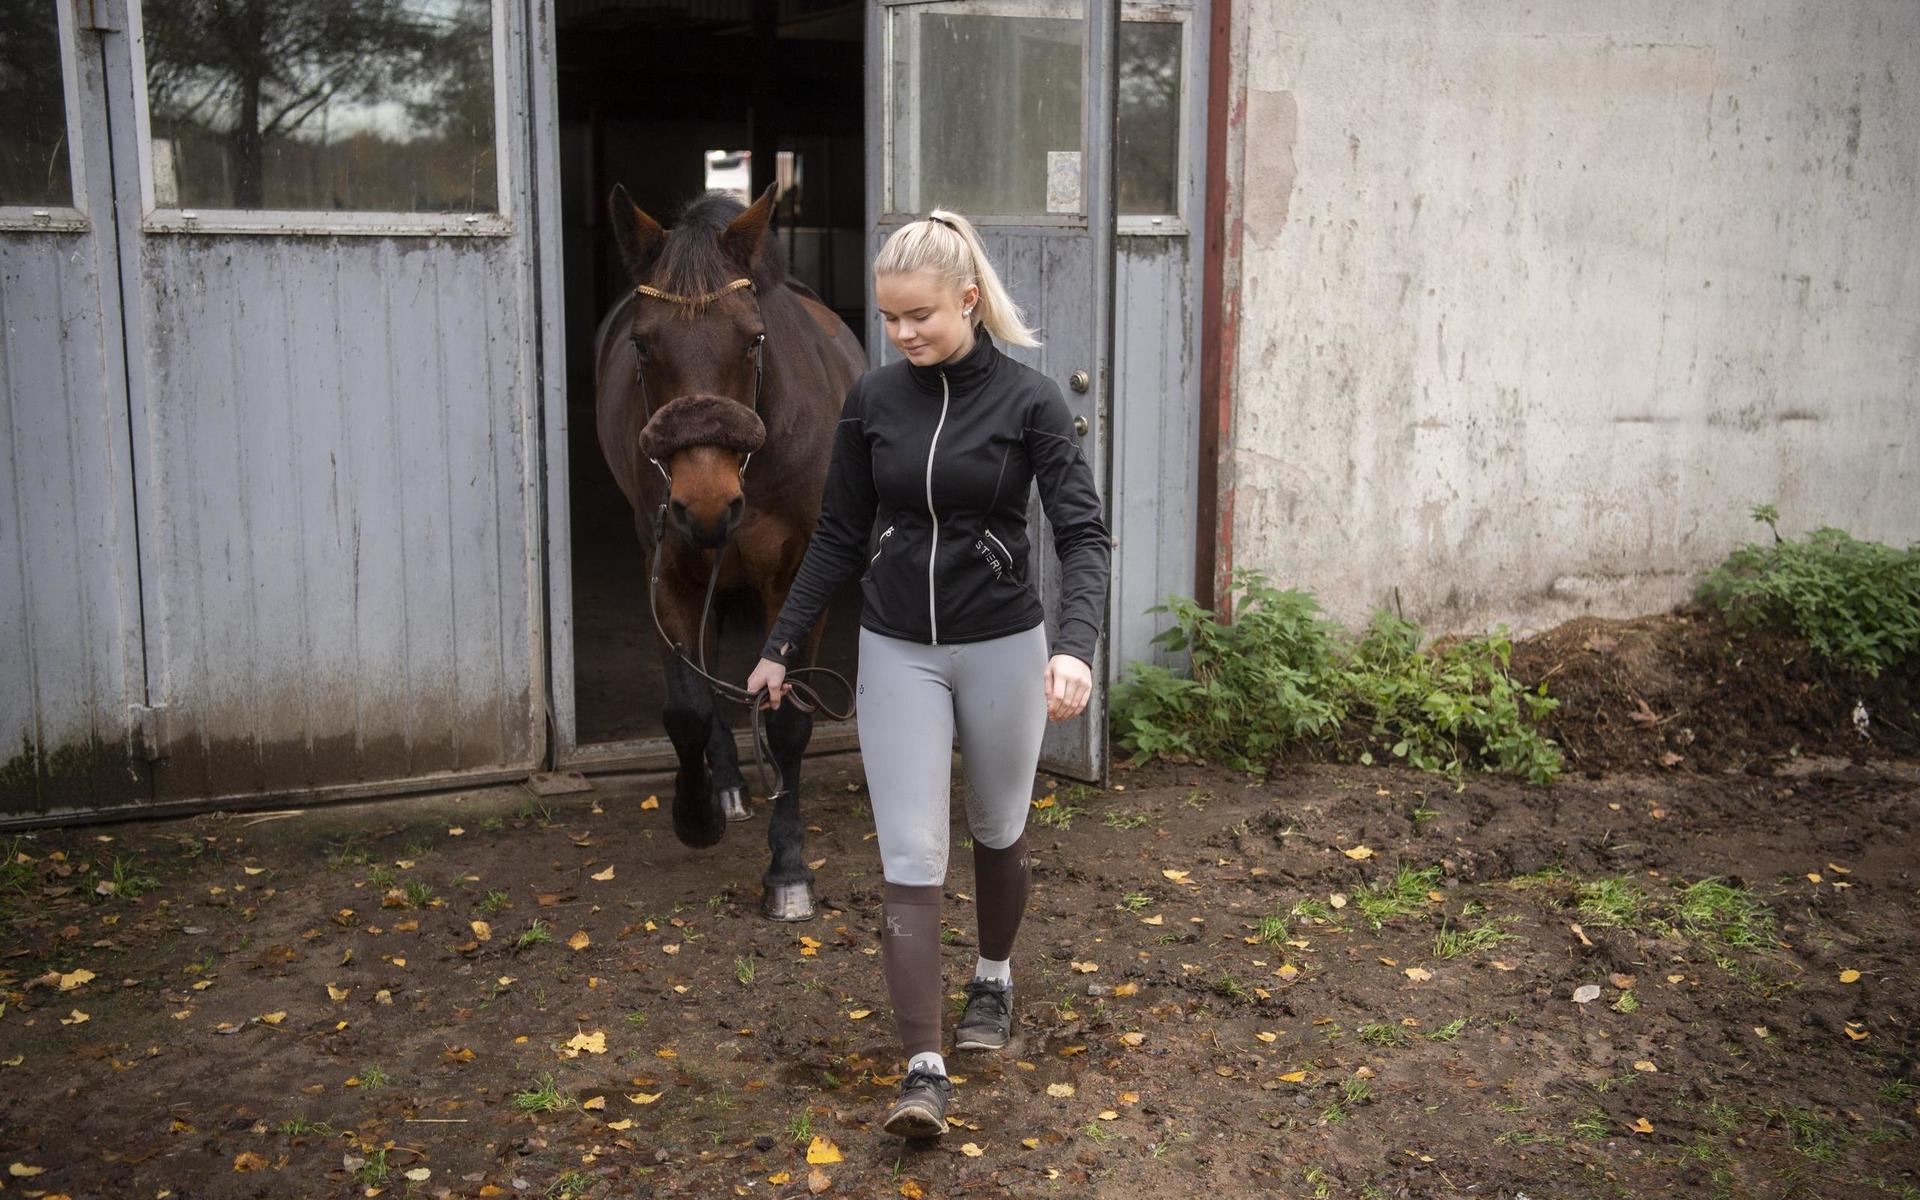 Hoppryttaren Emmie Bengtsson från Knäred har återförenats med hästen Poetic’s Cherry Pie efter trafikolyckan som gav henne tredje gradens brännskador och ledde till två månaders besöksförbud i stallet.